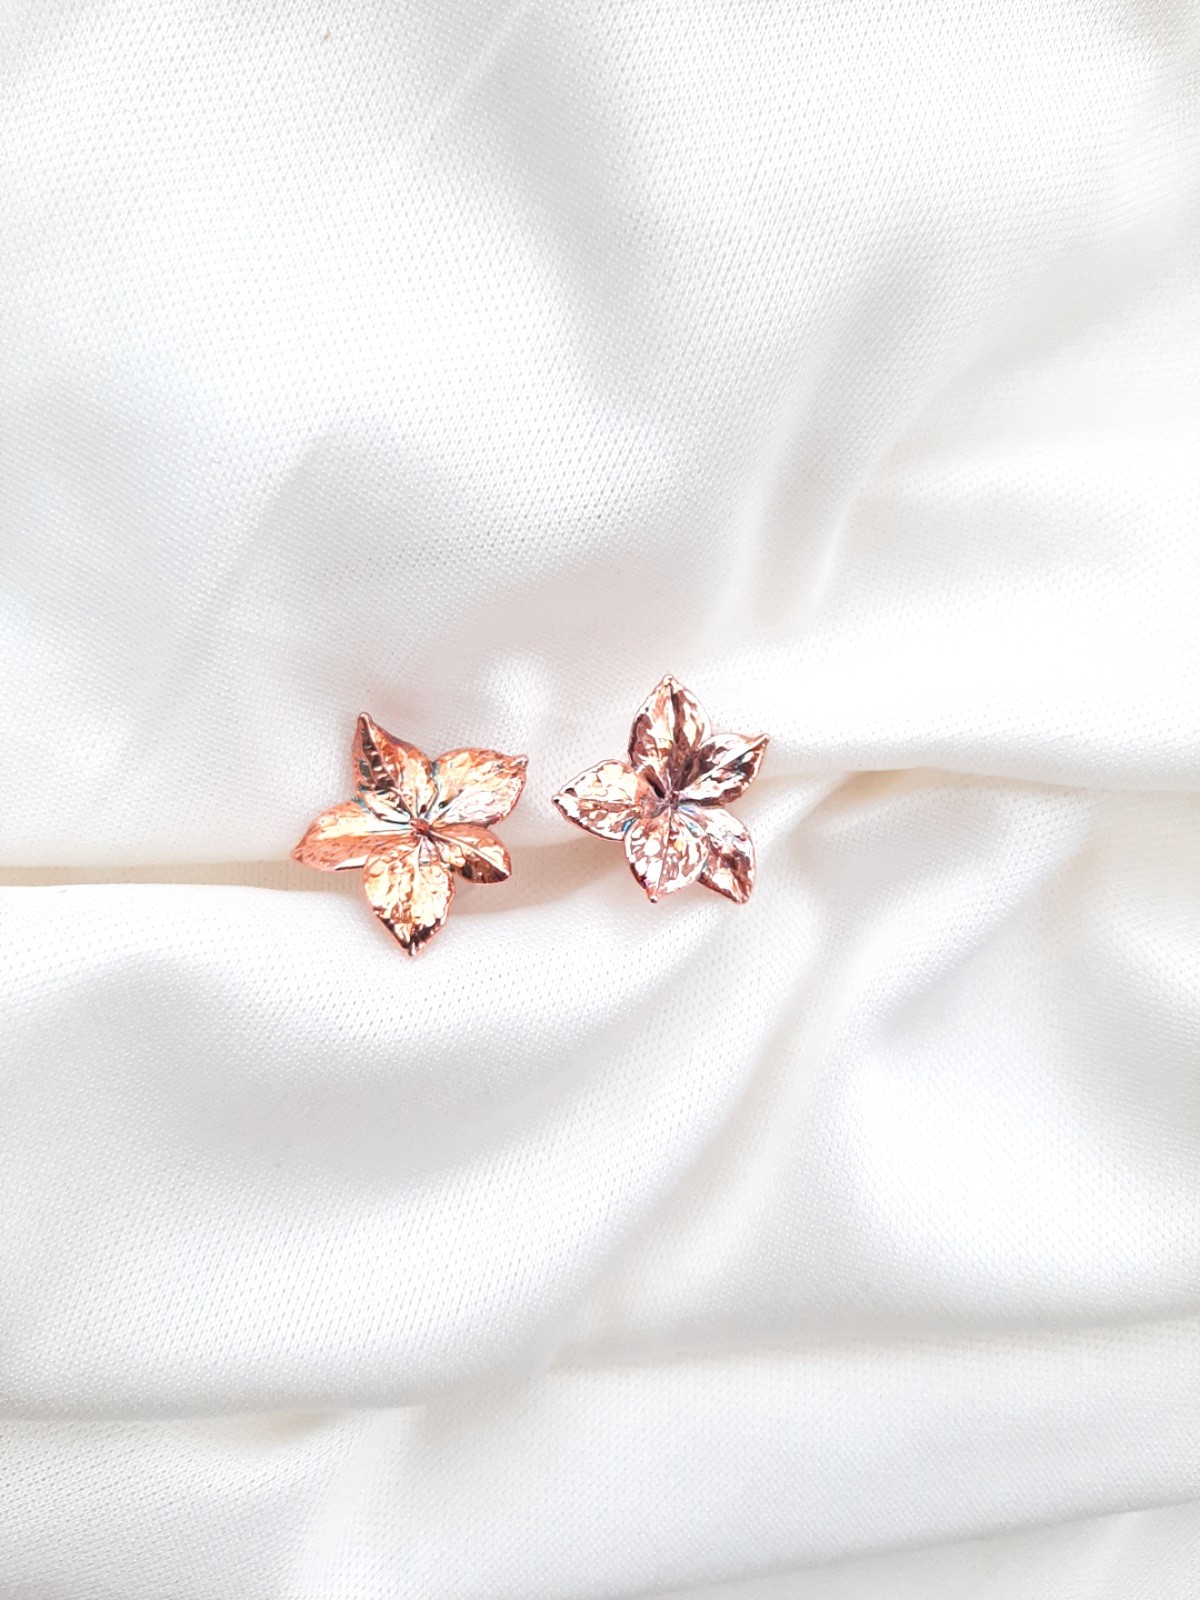 Real Hydrangea flower earrings electroformed copper.